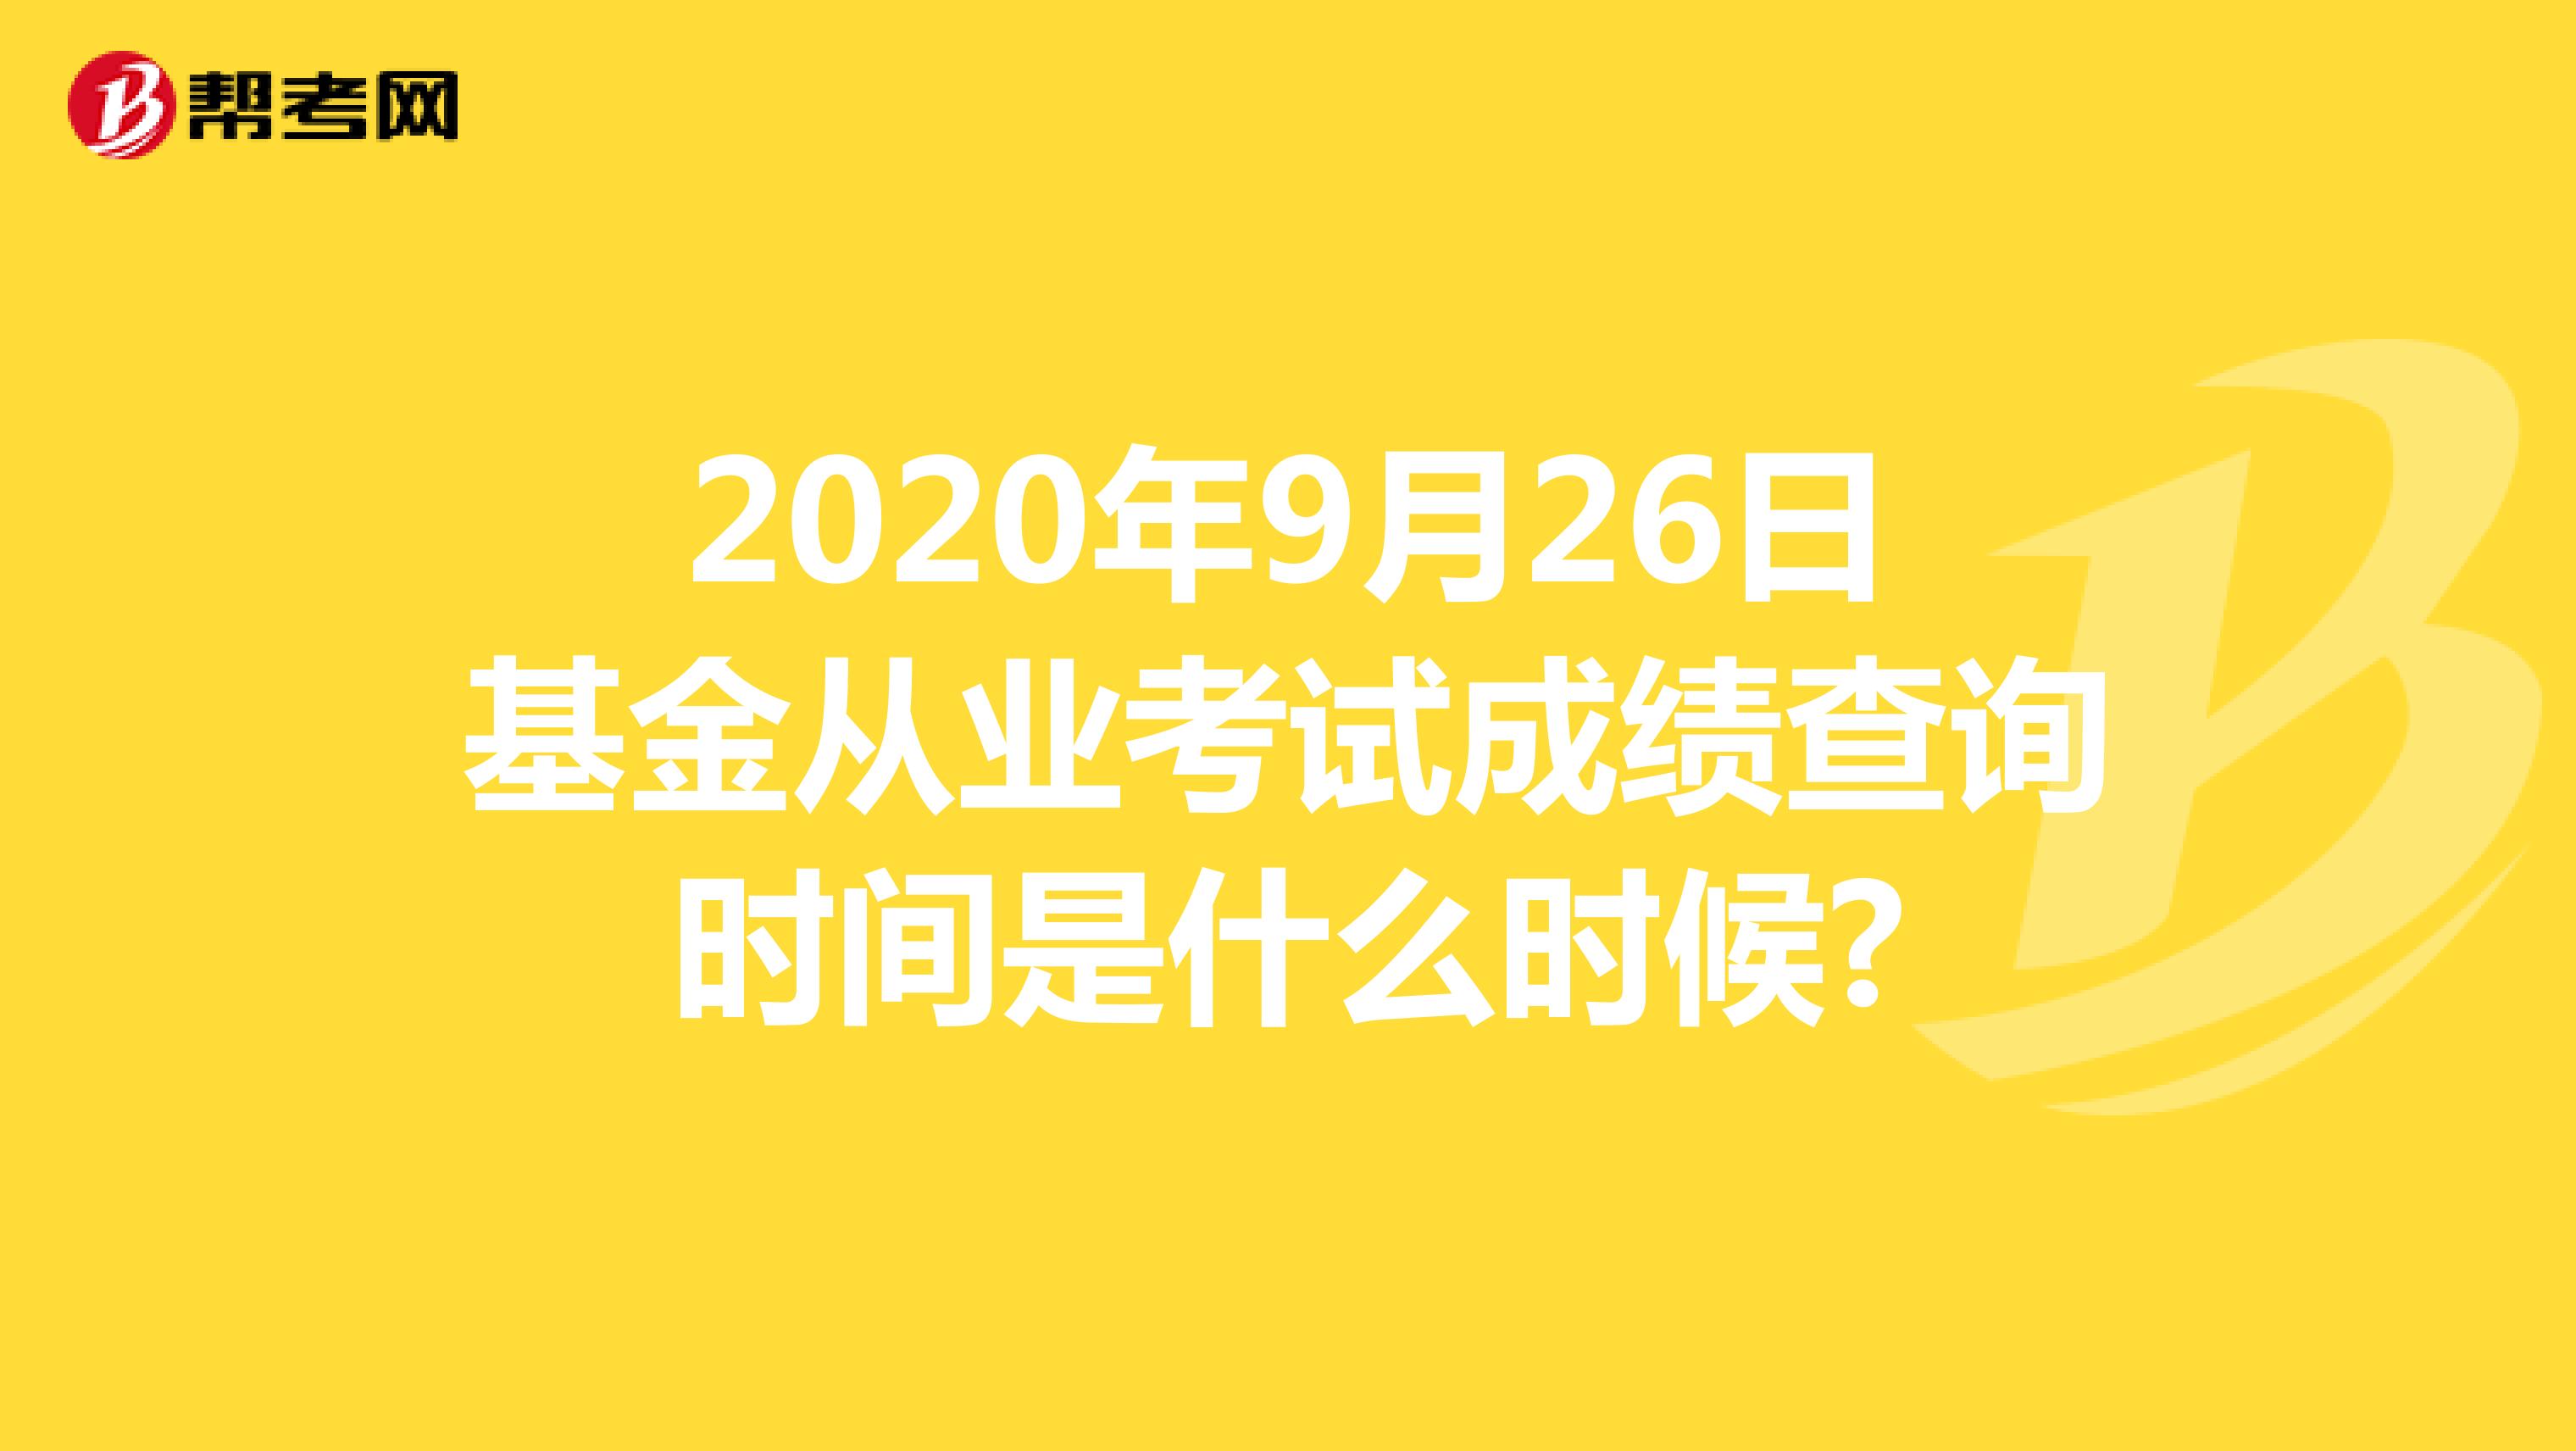 2020年9月26日基金从业考试成绩查询时间是什么时候?